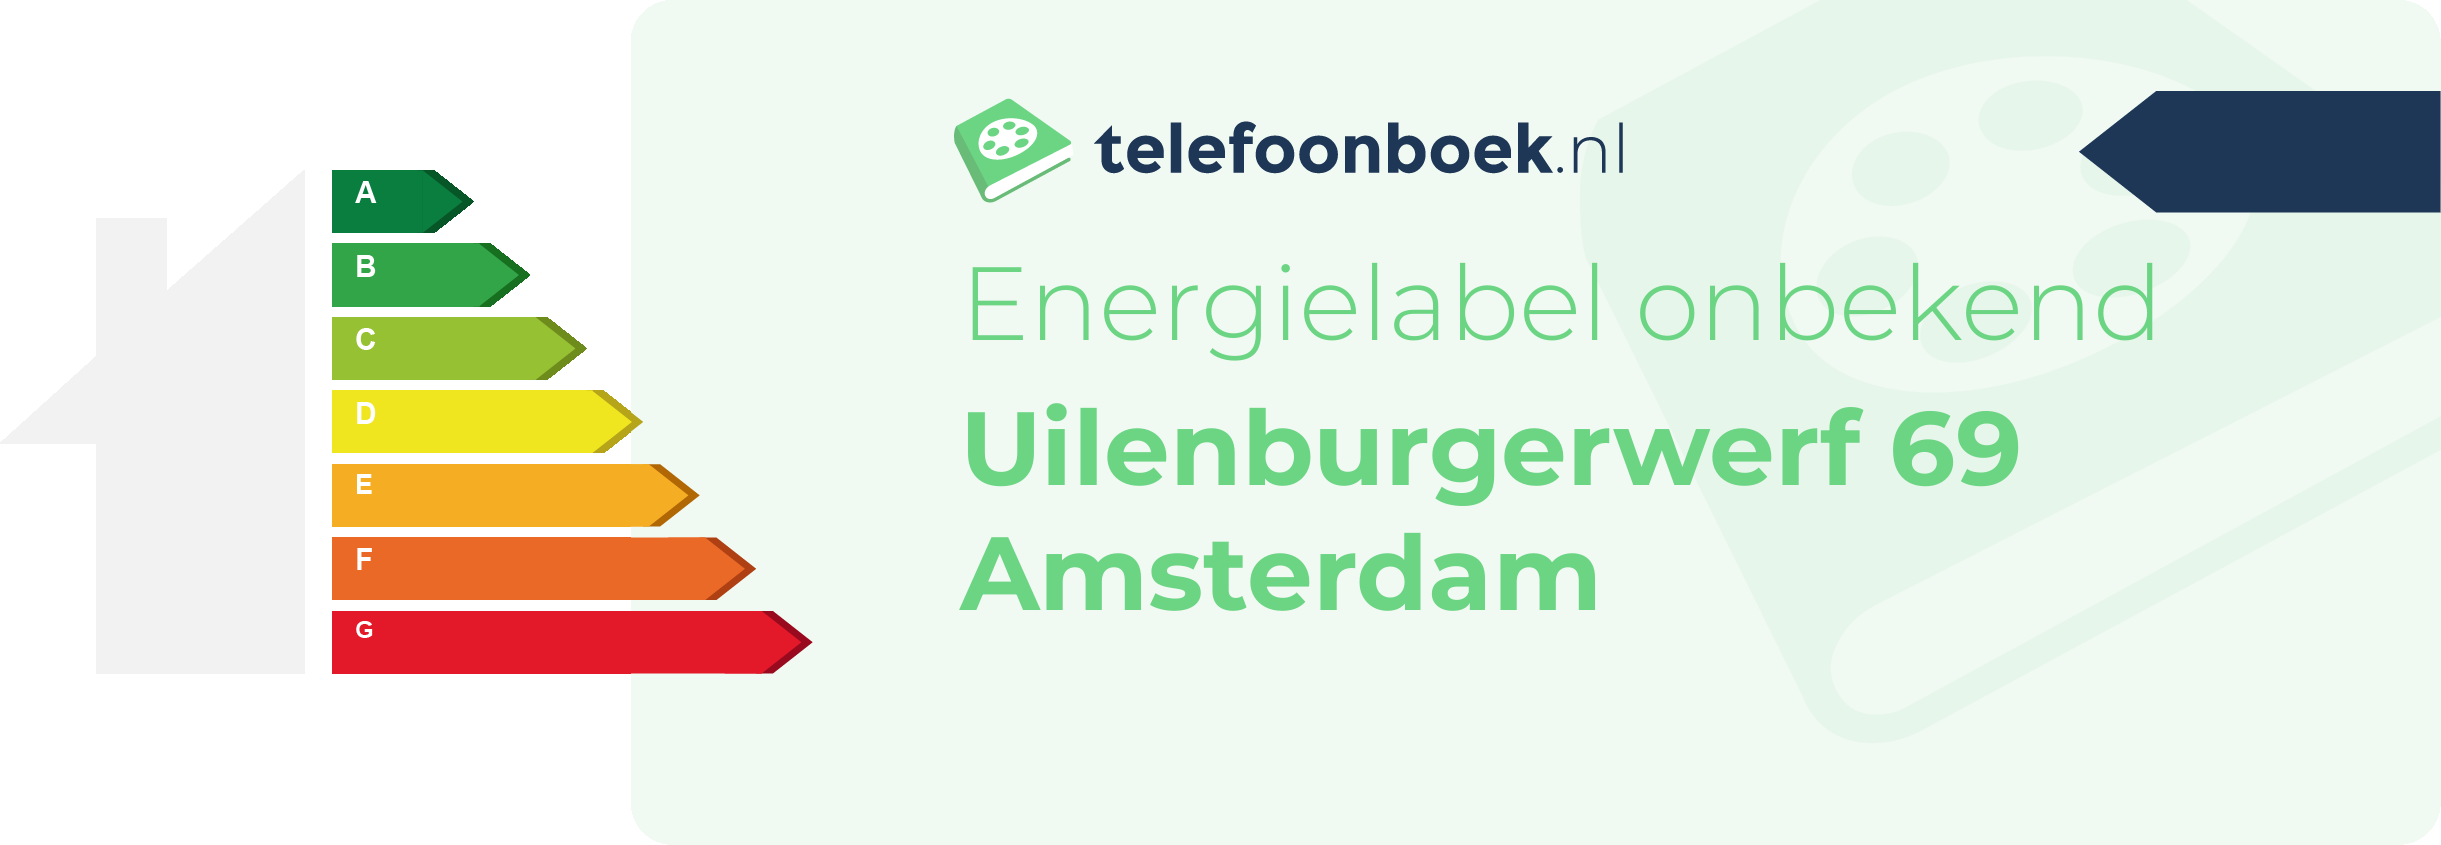 Energielabel Uilenburgerwerf 69 Amsterdam